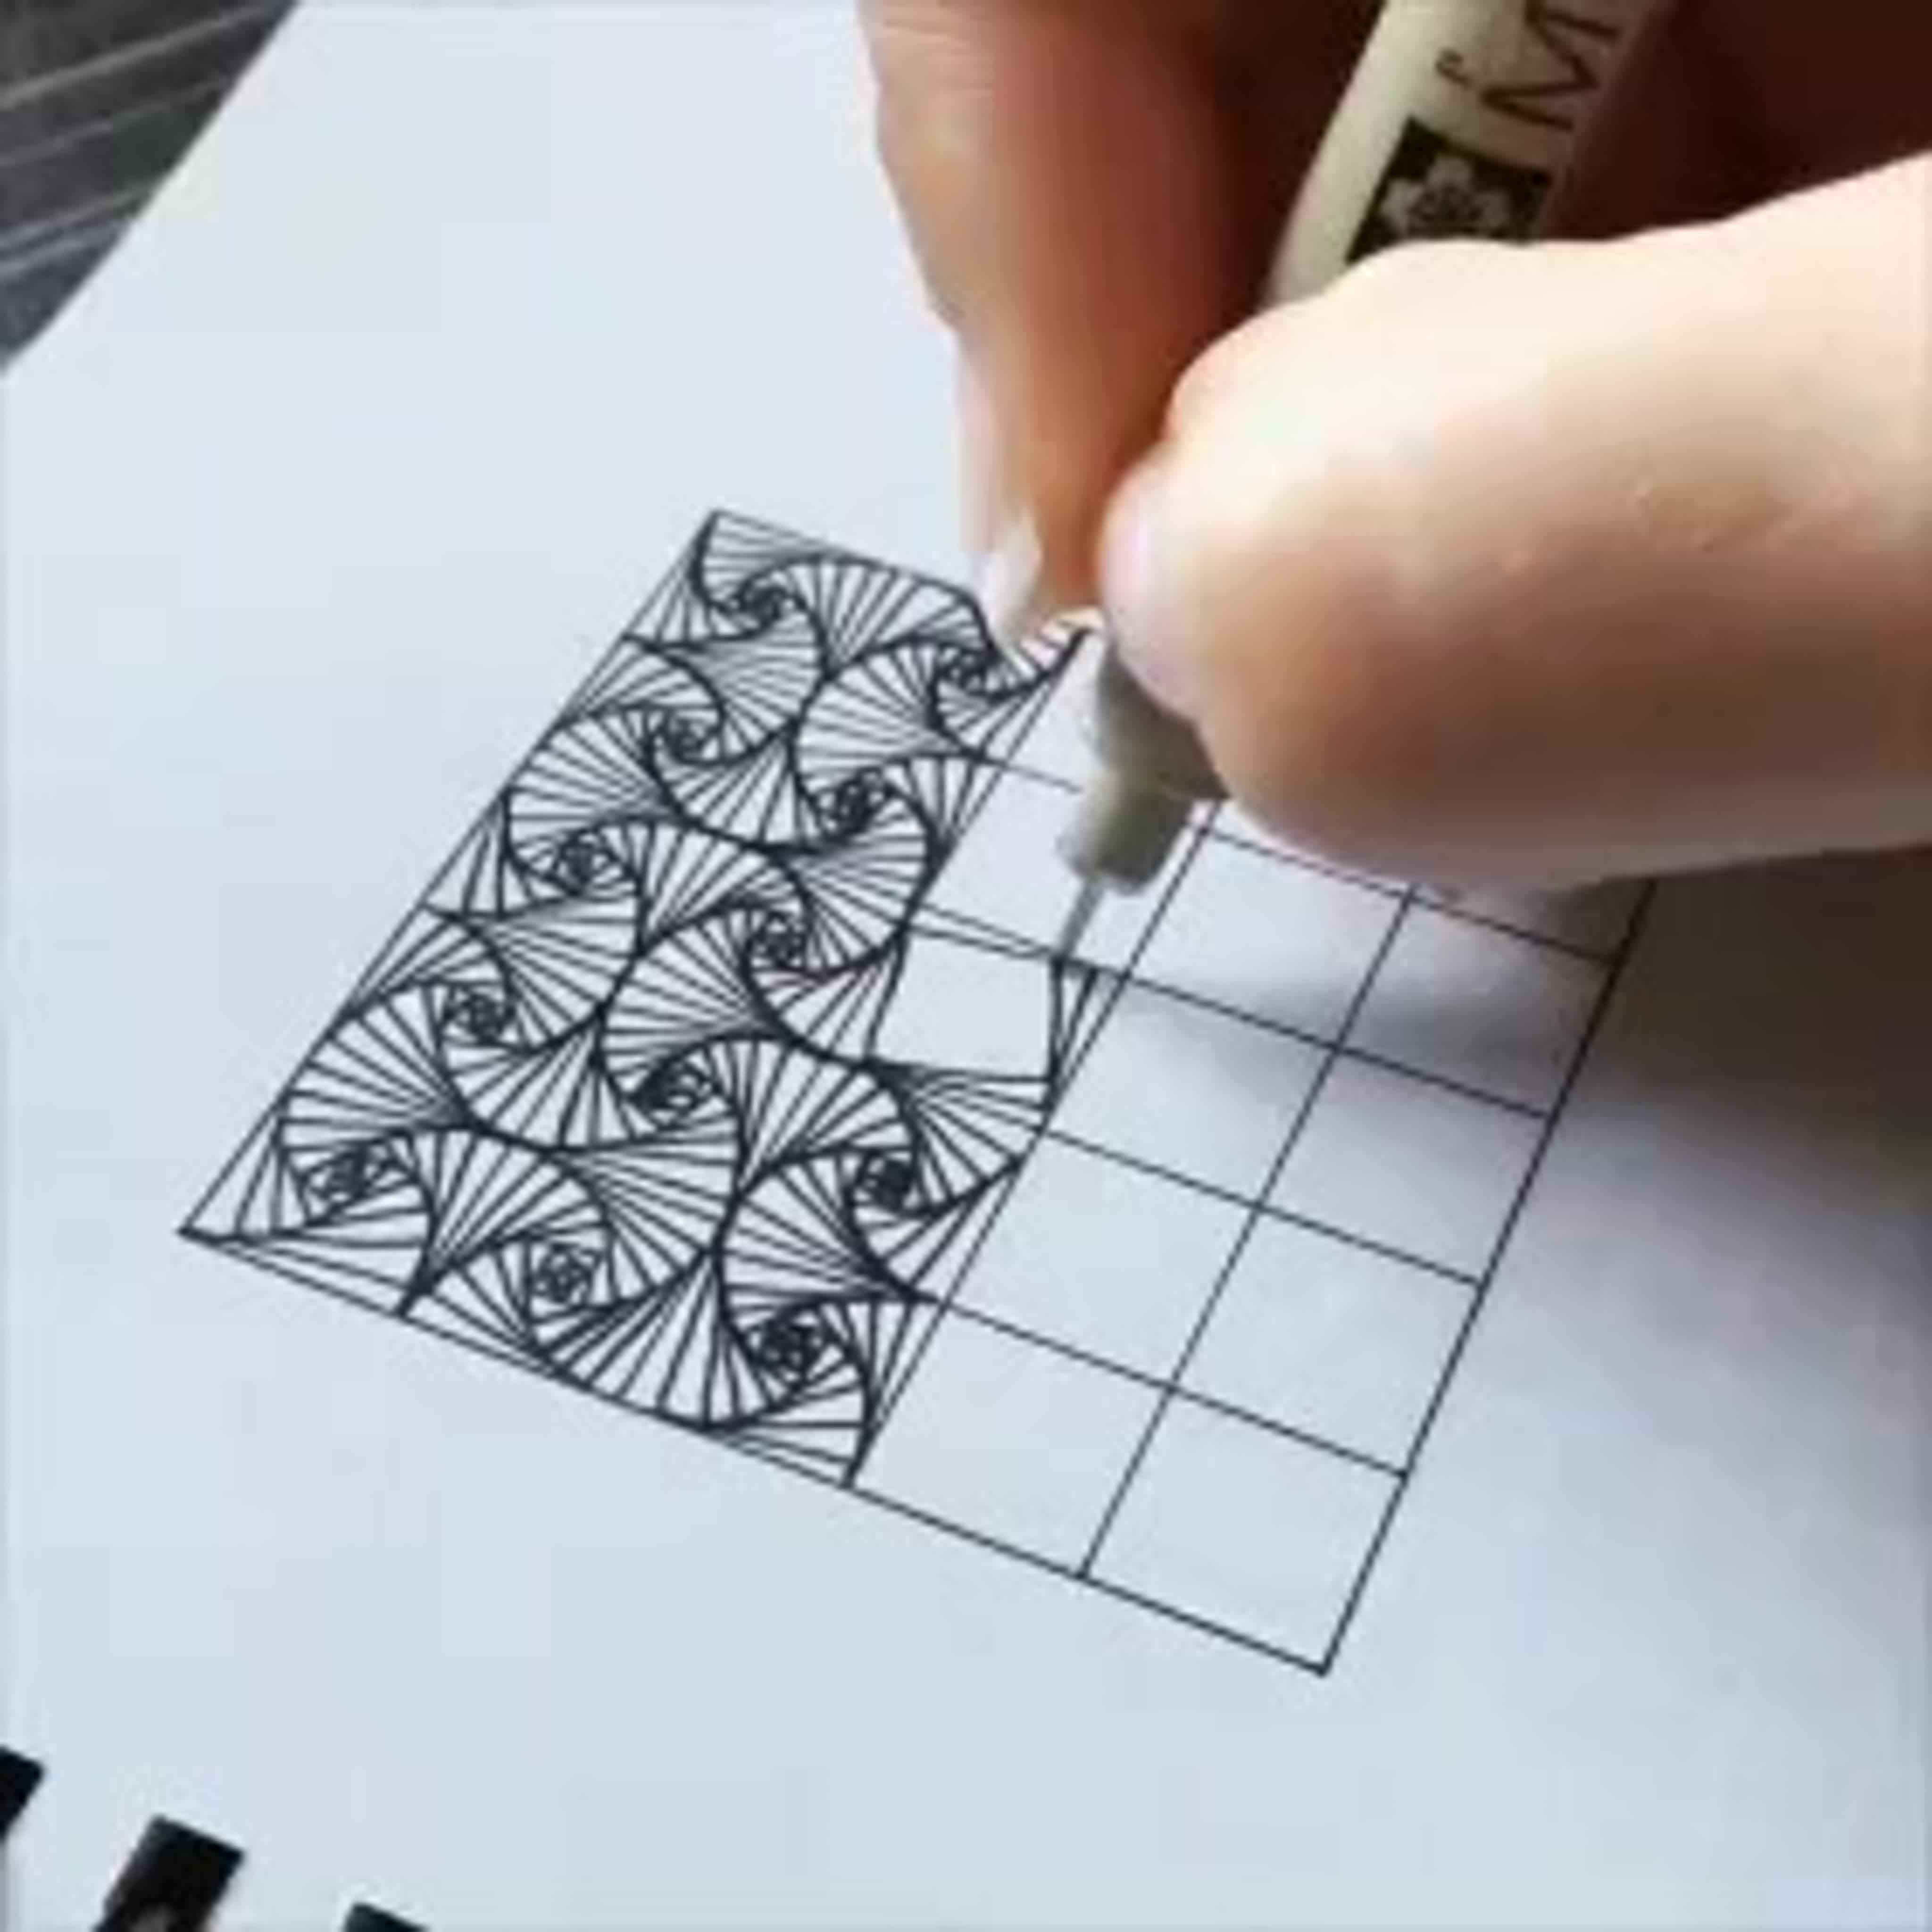 Узоры ручкой на бумаге простые